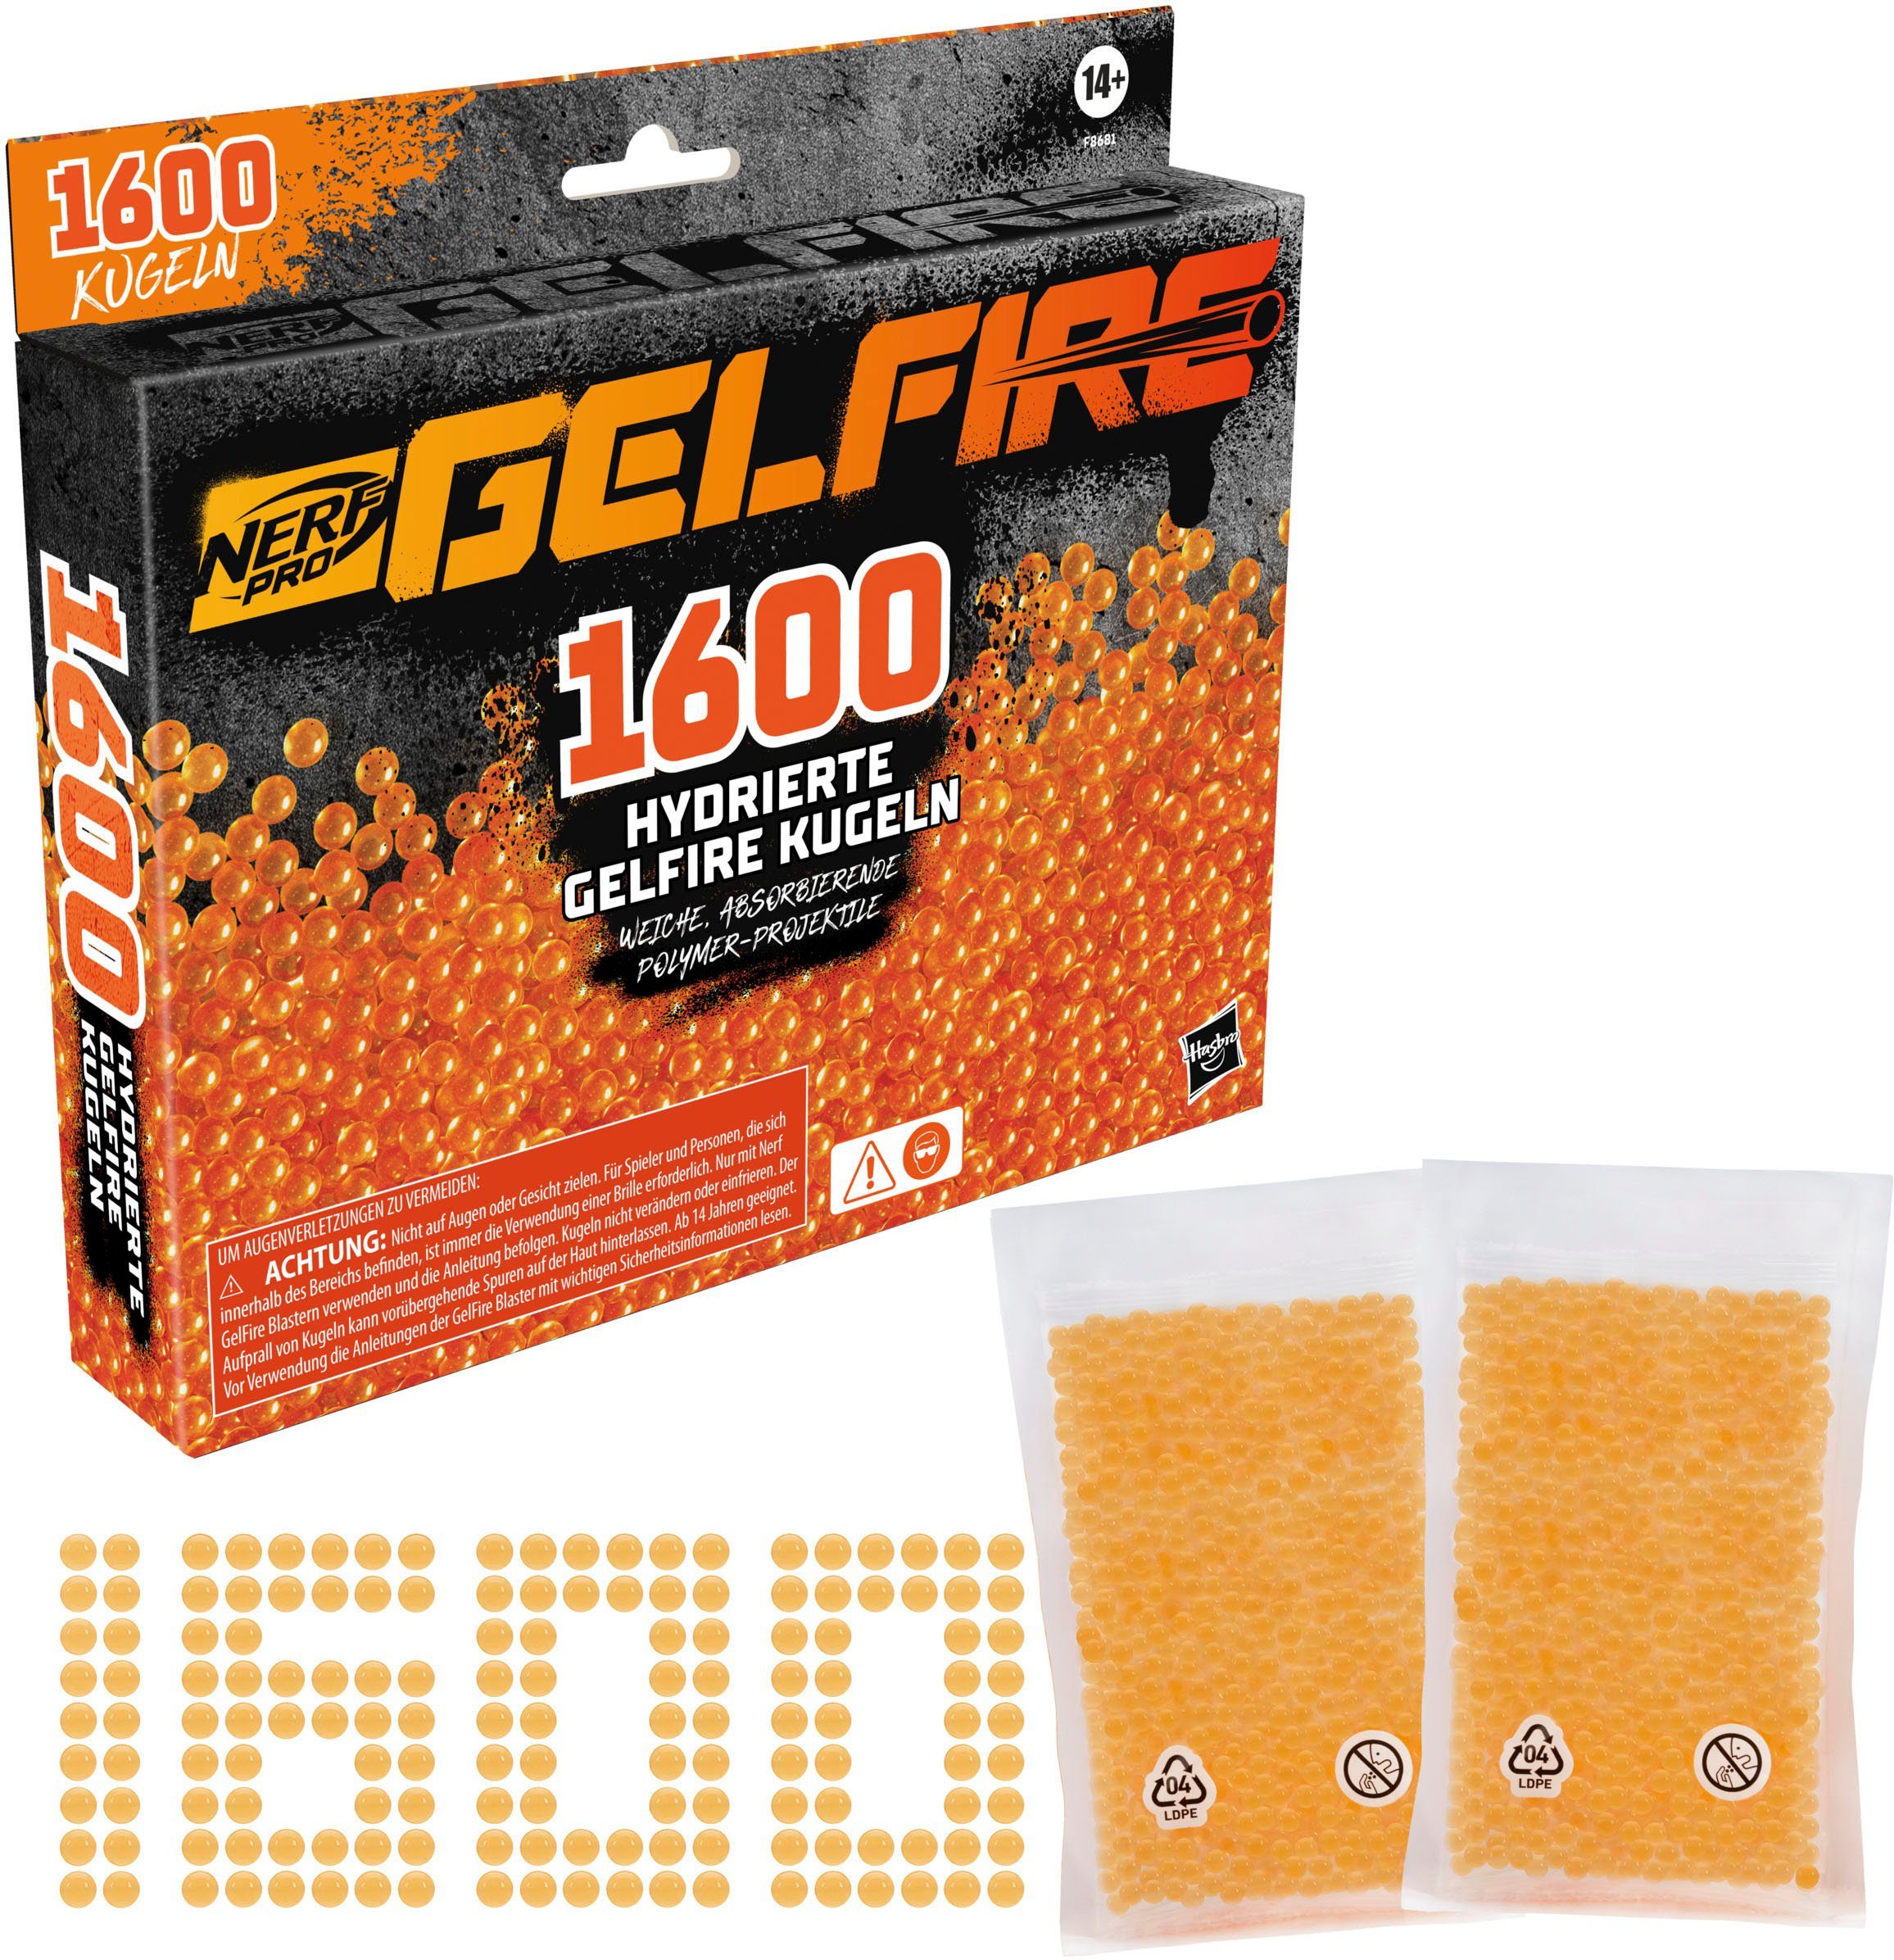 Hasbro Blaster Nerf Pro Gelfire Nachfüllpack (1600 Kugeln) | Brillengestelle